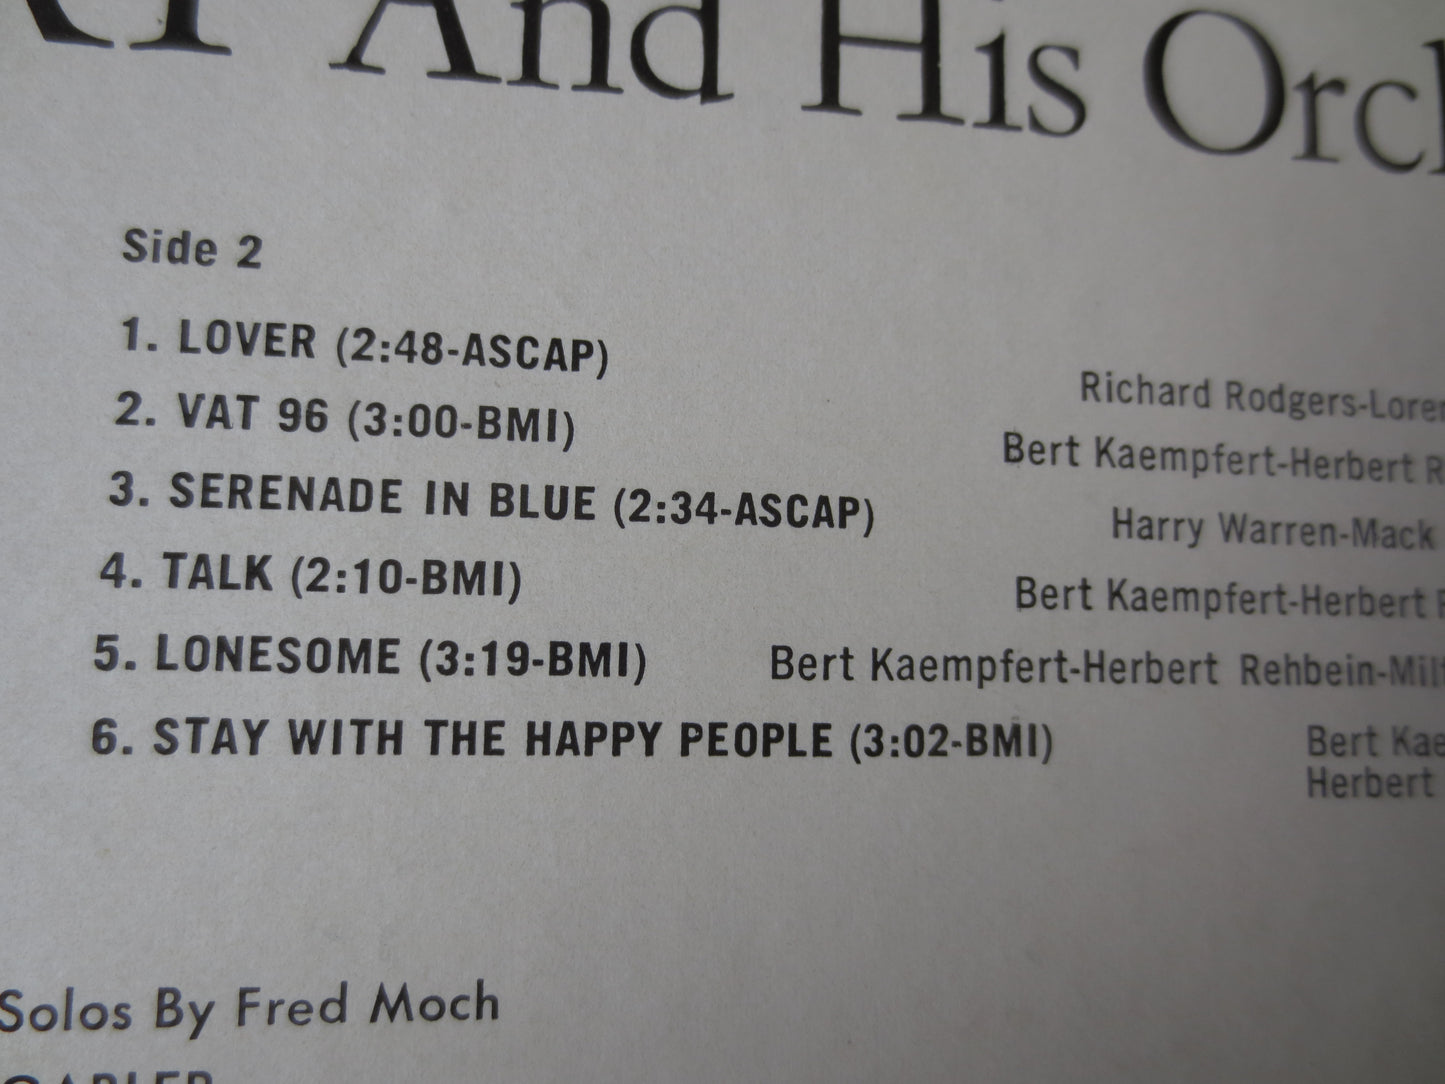 BERT KAEMPFERT, The WORLD We Knew, Bert Kaempfert Album, Jazz Records, Jazz Albums, Bert Kaempfert Music, lps, 1967 Records